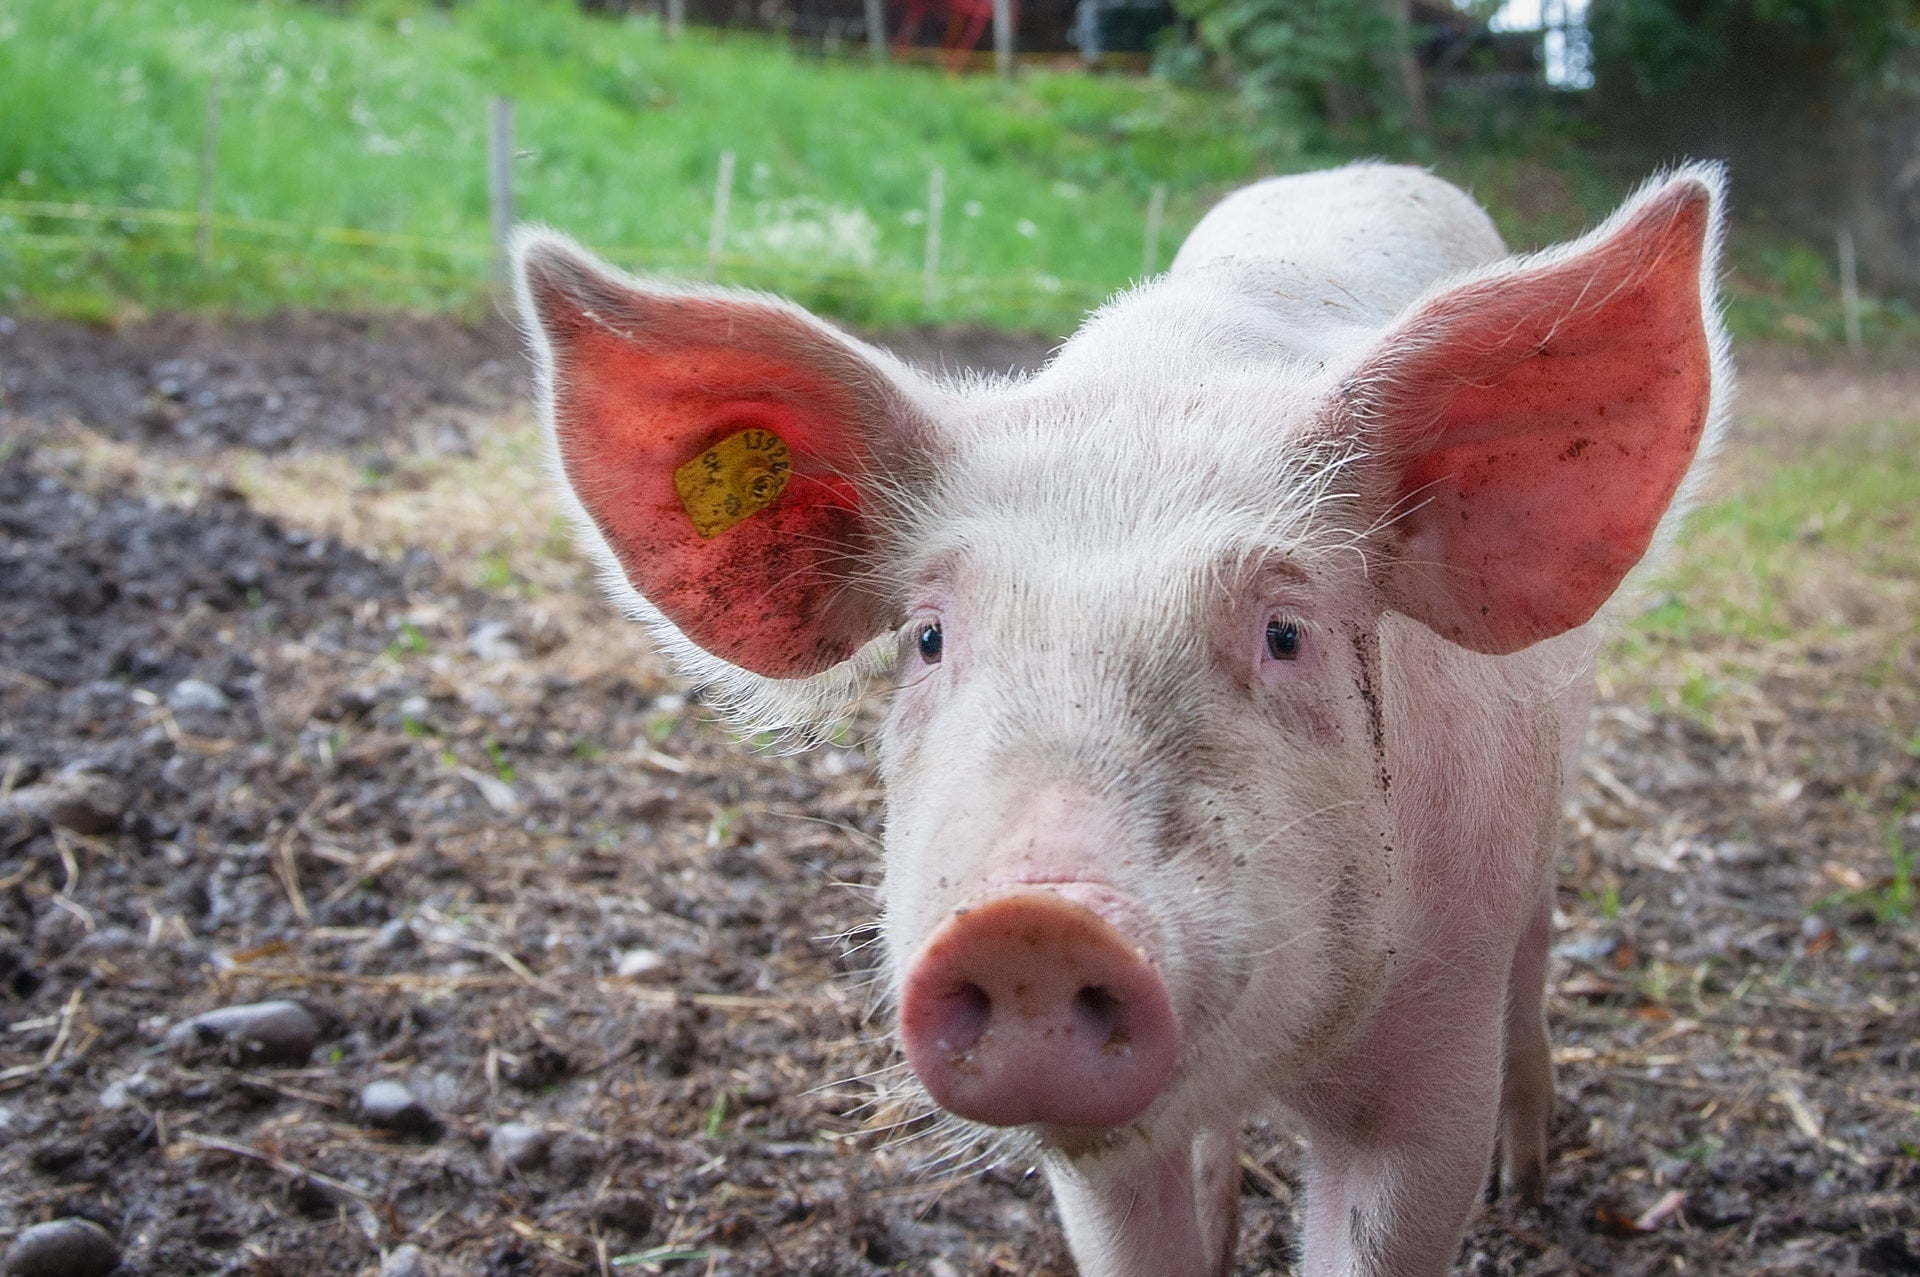 中華民國動植物防疫檢疫局聯絡電話 farm farmer pink ears pig animal pork